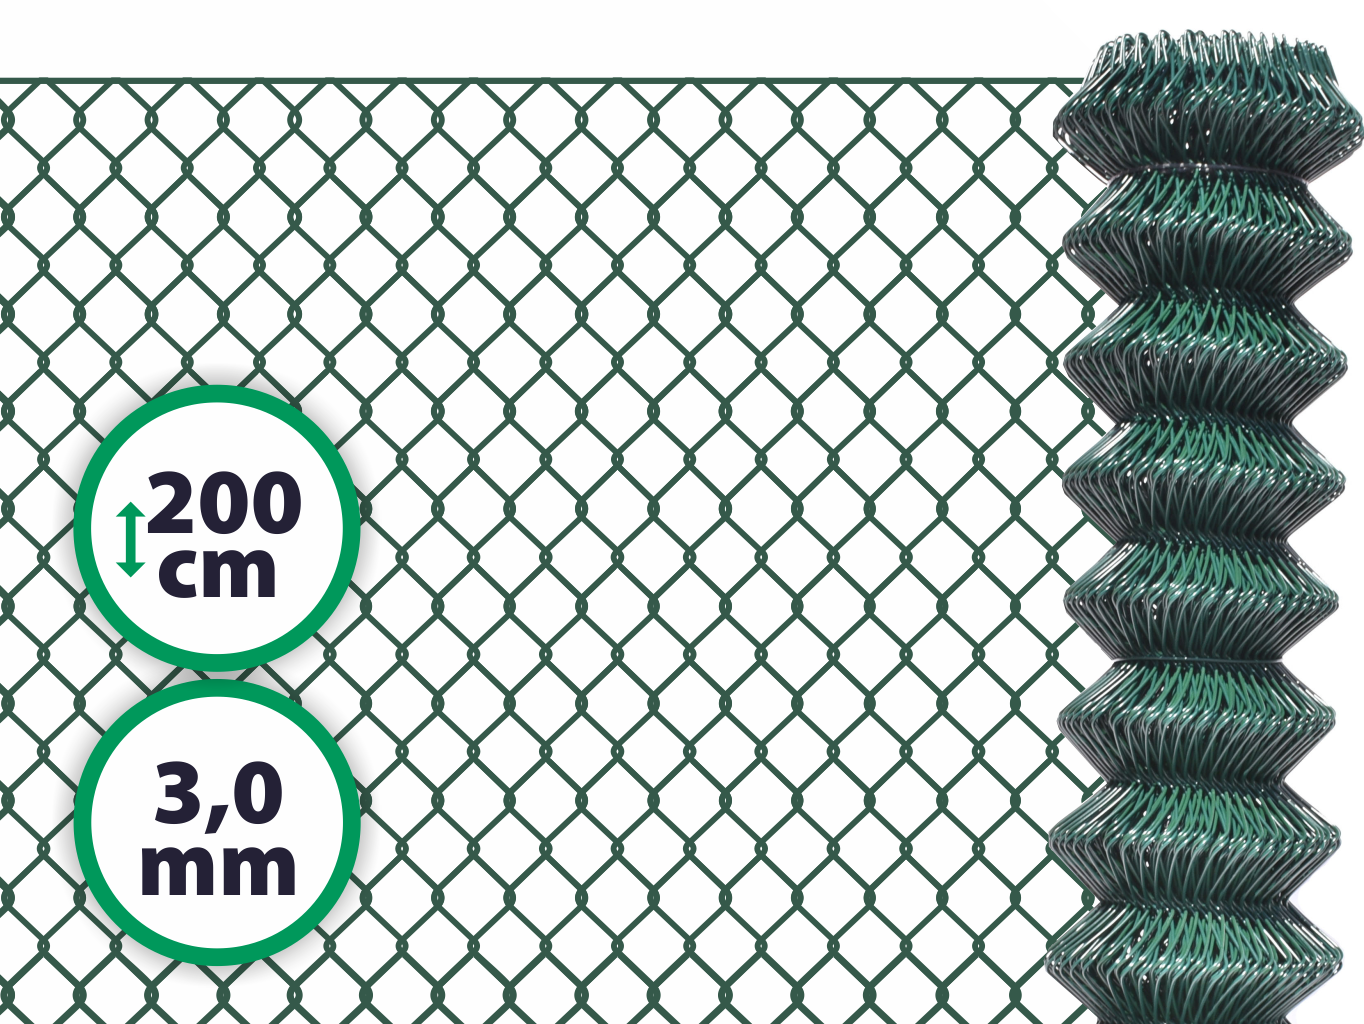 Pletivo poplastované SUPER – 200 cm bez ND (3,0 mm; 50x50 mm; PVC; zelené) PLOTY Sklad5 0 8595068446539